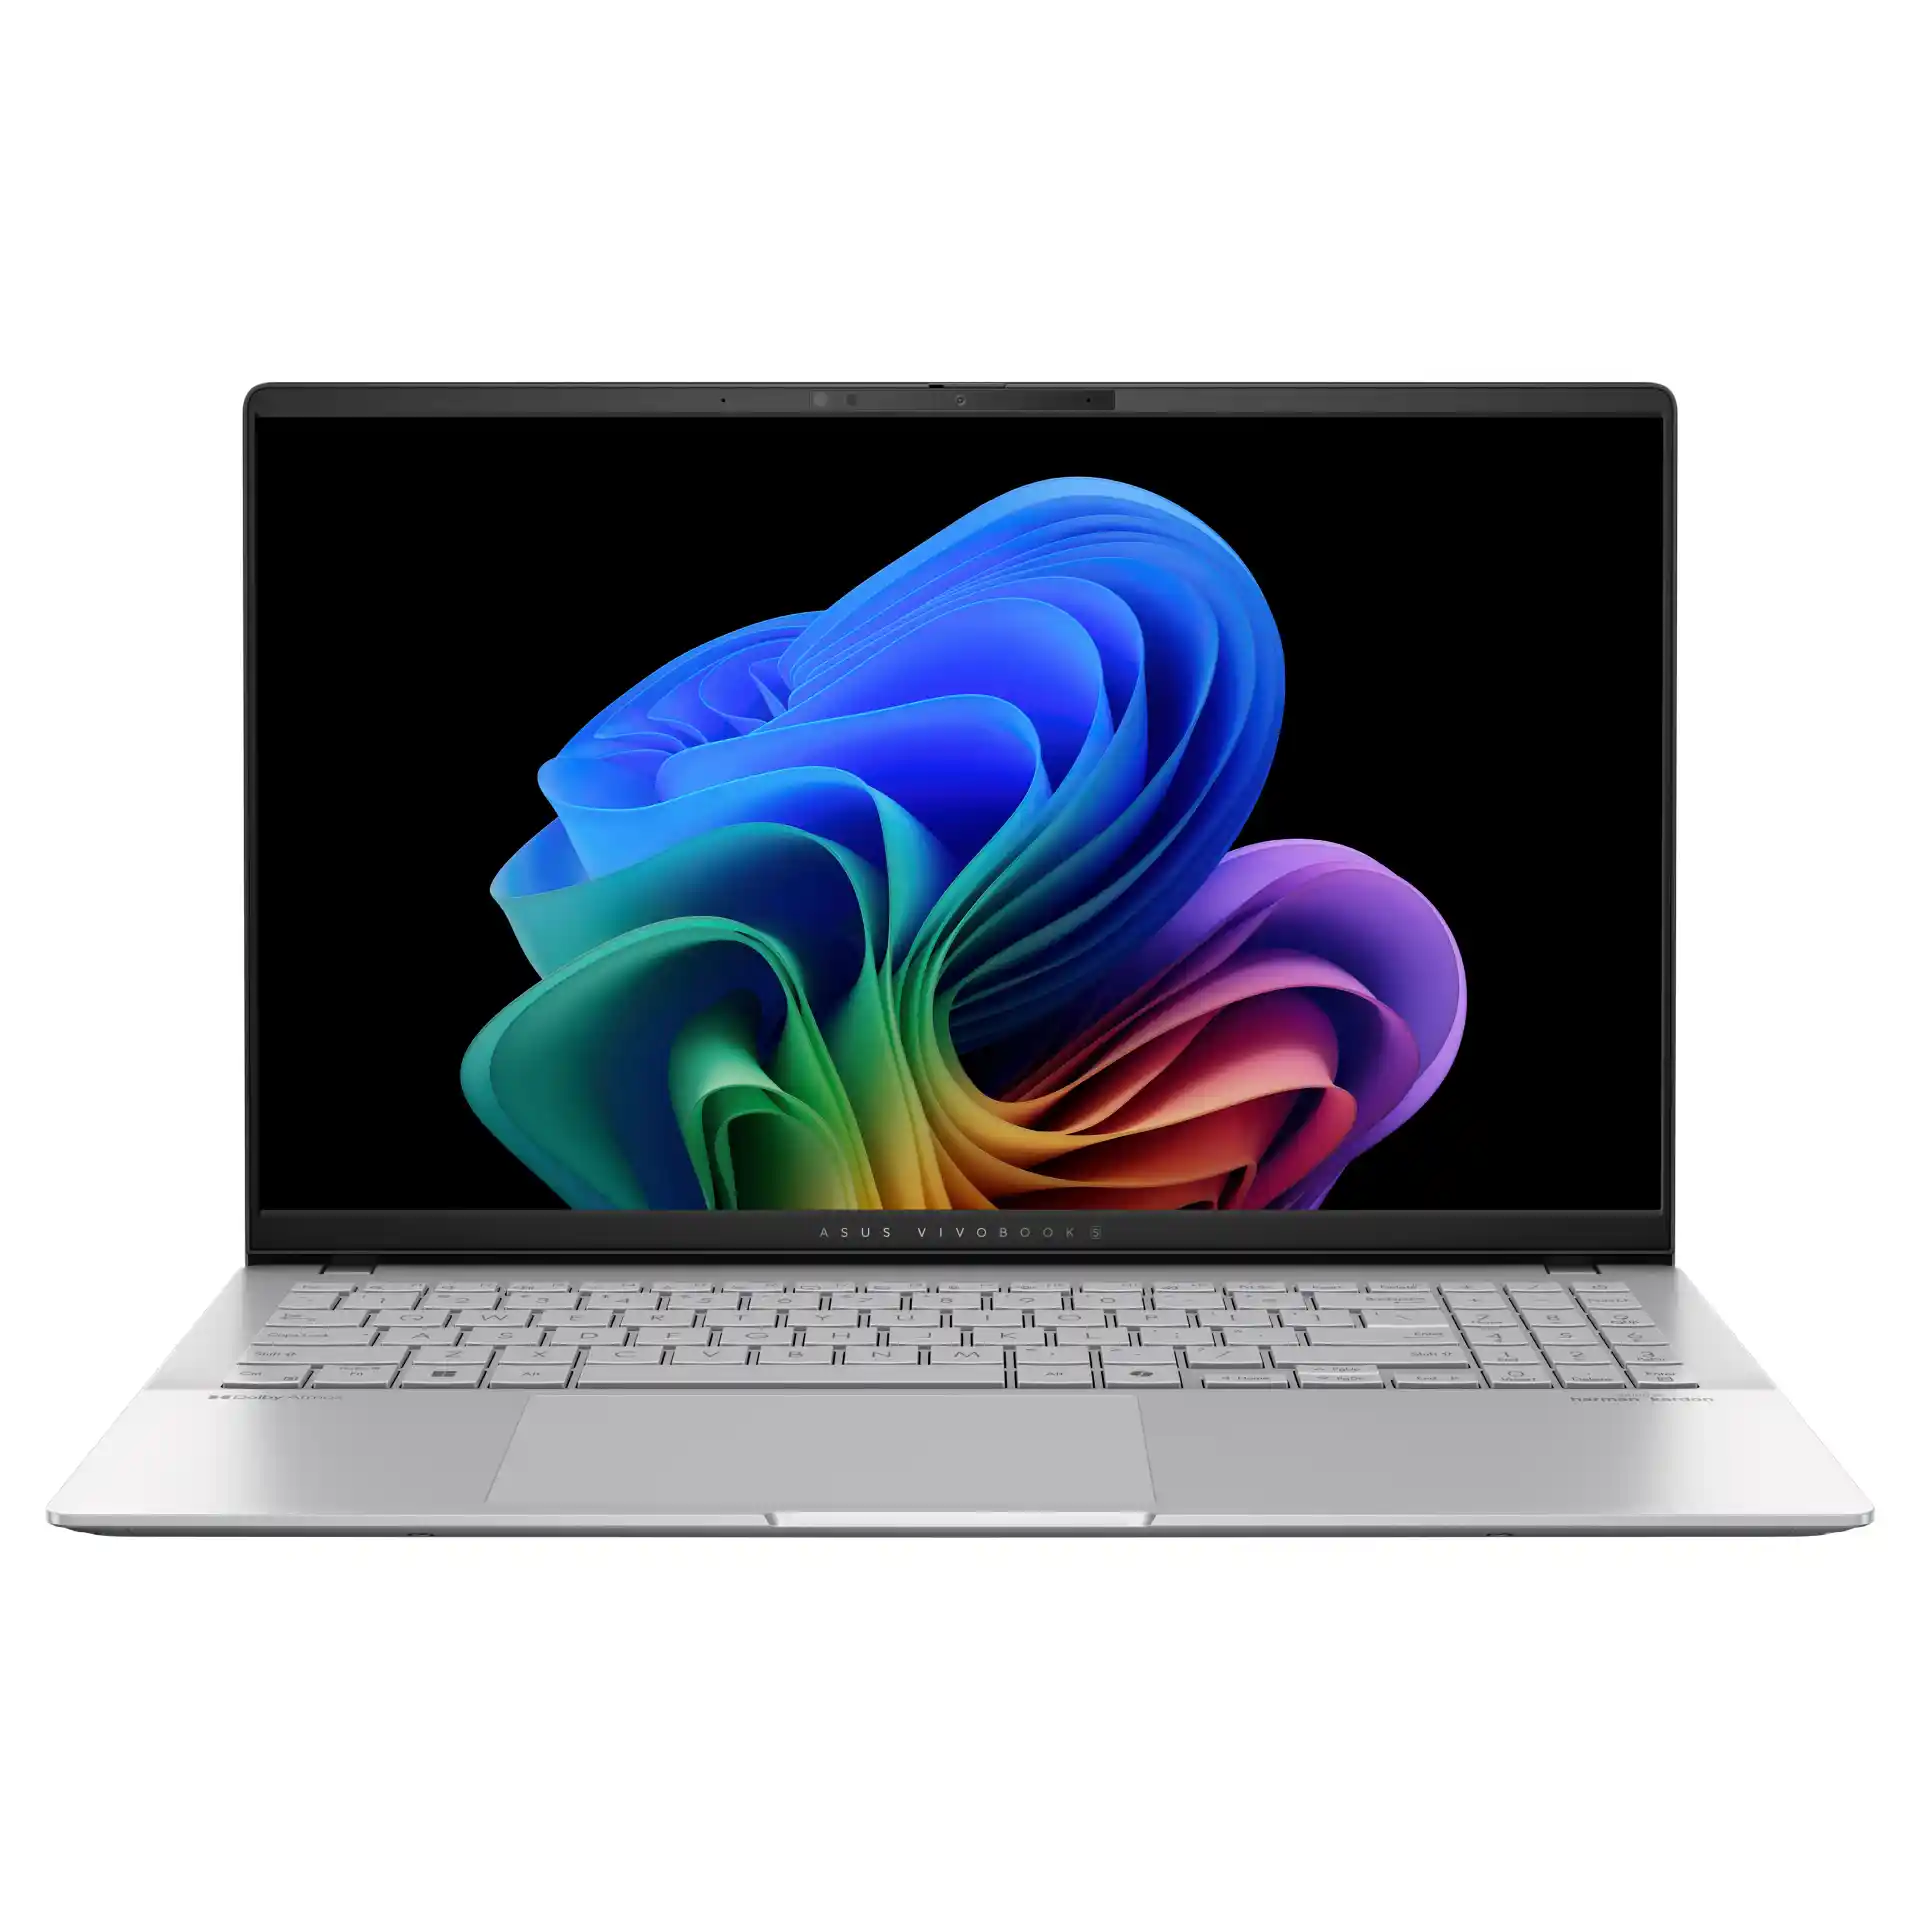 ASUS annuncia il Vivobook S15, primo laptop basato sull'intelligenza artificiale Copilot+ PC - caratteristiche, specifiche, uscita e prezzi